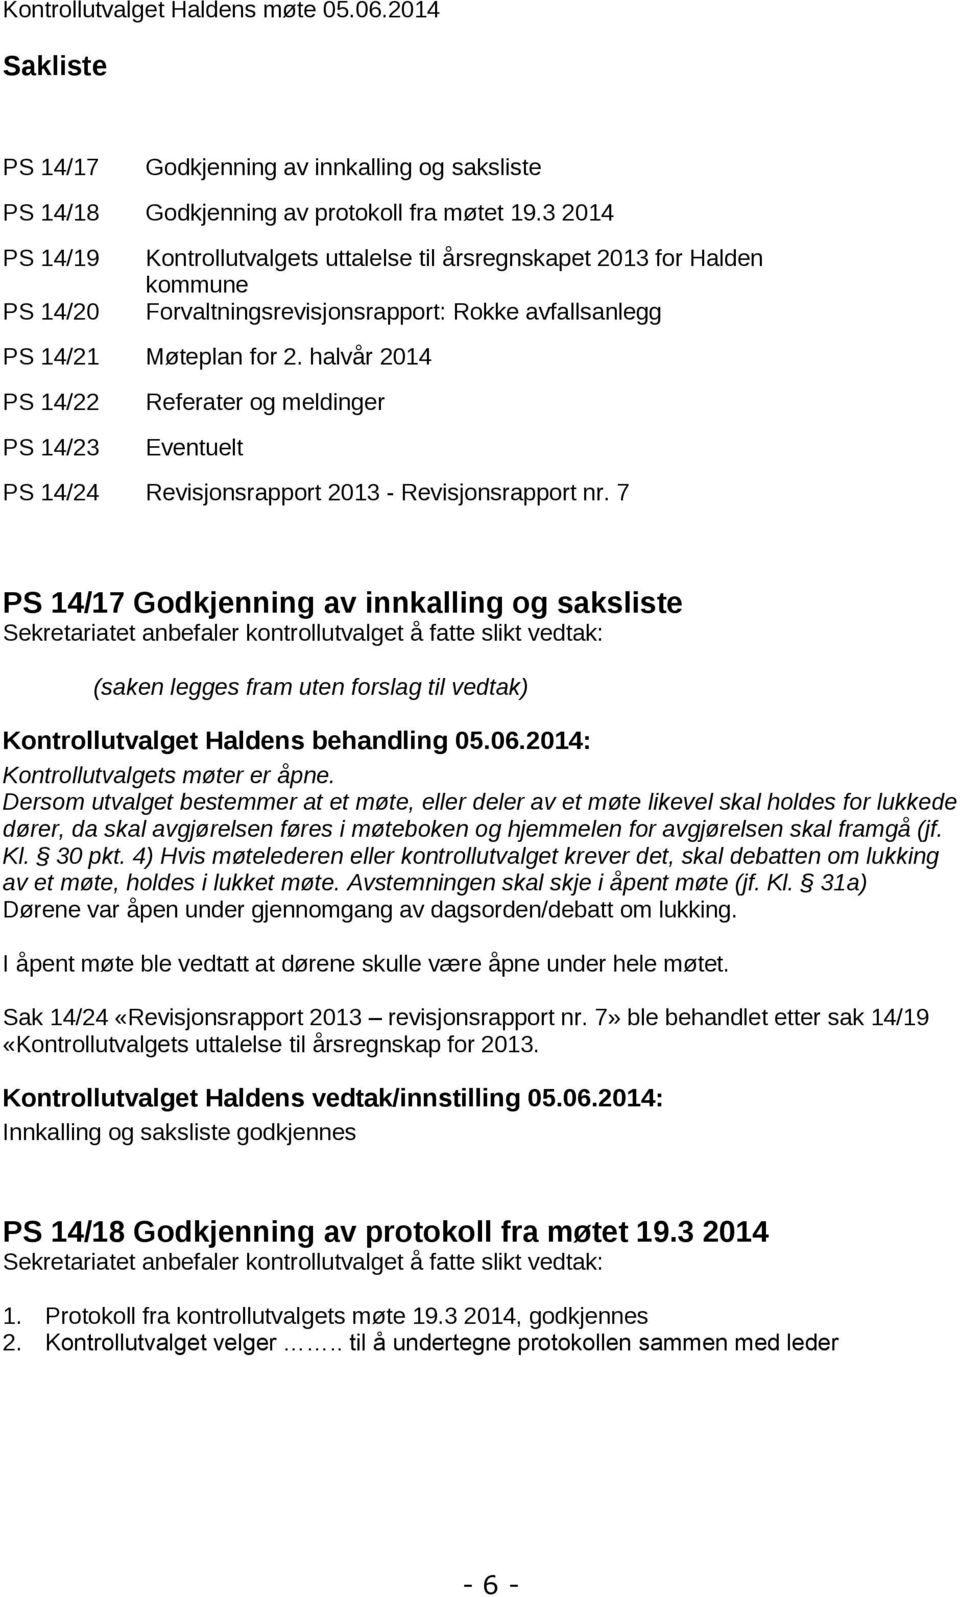 halvår 2014 PS 14/22 PS 14/23 Referater og meldinger Eventuelt PS 14/24 Revisjonsrapport 2013 - Revisjonsrapport nr.